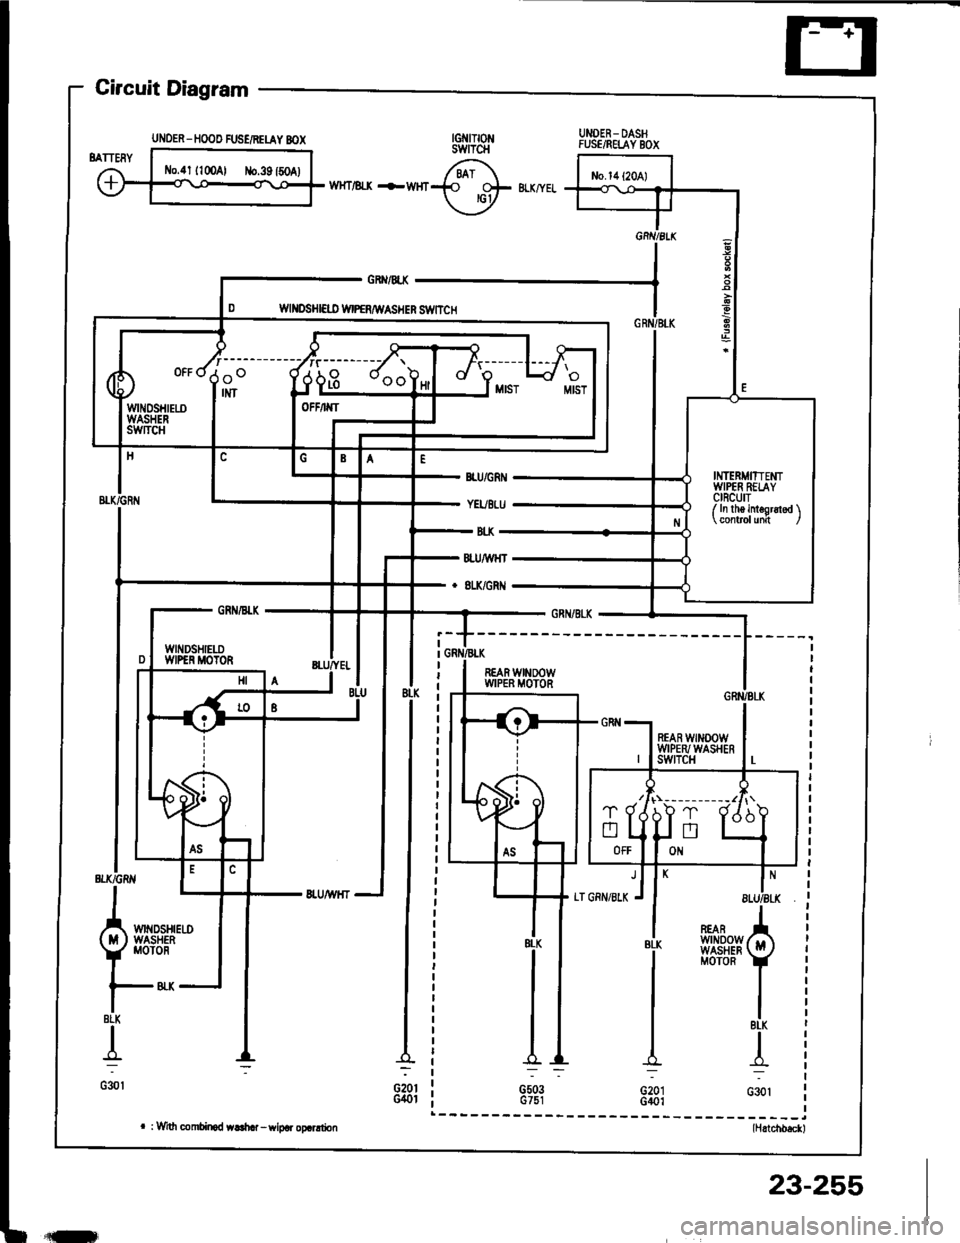 HONDA INTEGRA 1994 4.G Workshop Manual Circuit Diagram
UNOER- DASHFUSE/RELAY BOX
WHT/ll-X -FWHr
GRX/4X
WII{DSHI€ID WIPERAIVASHER S1VITCH
REAR WINOOWWIPER MOTOR
BLK
{
G30l
REARwtN00wWASHERMOTOR
BLK
G20IG401
l*_(ittwA!
Y 
Mor
|-8LK
I
G30l